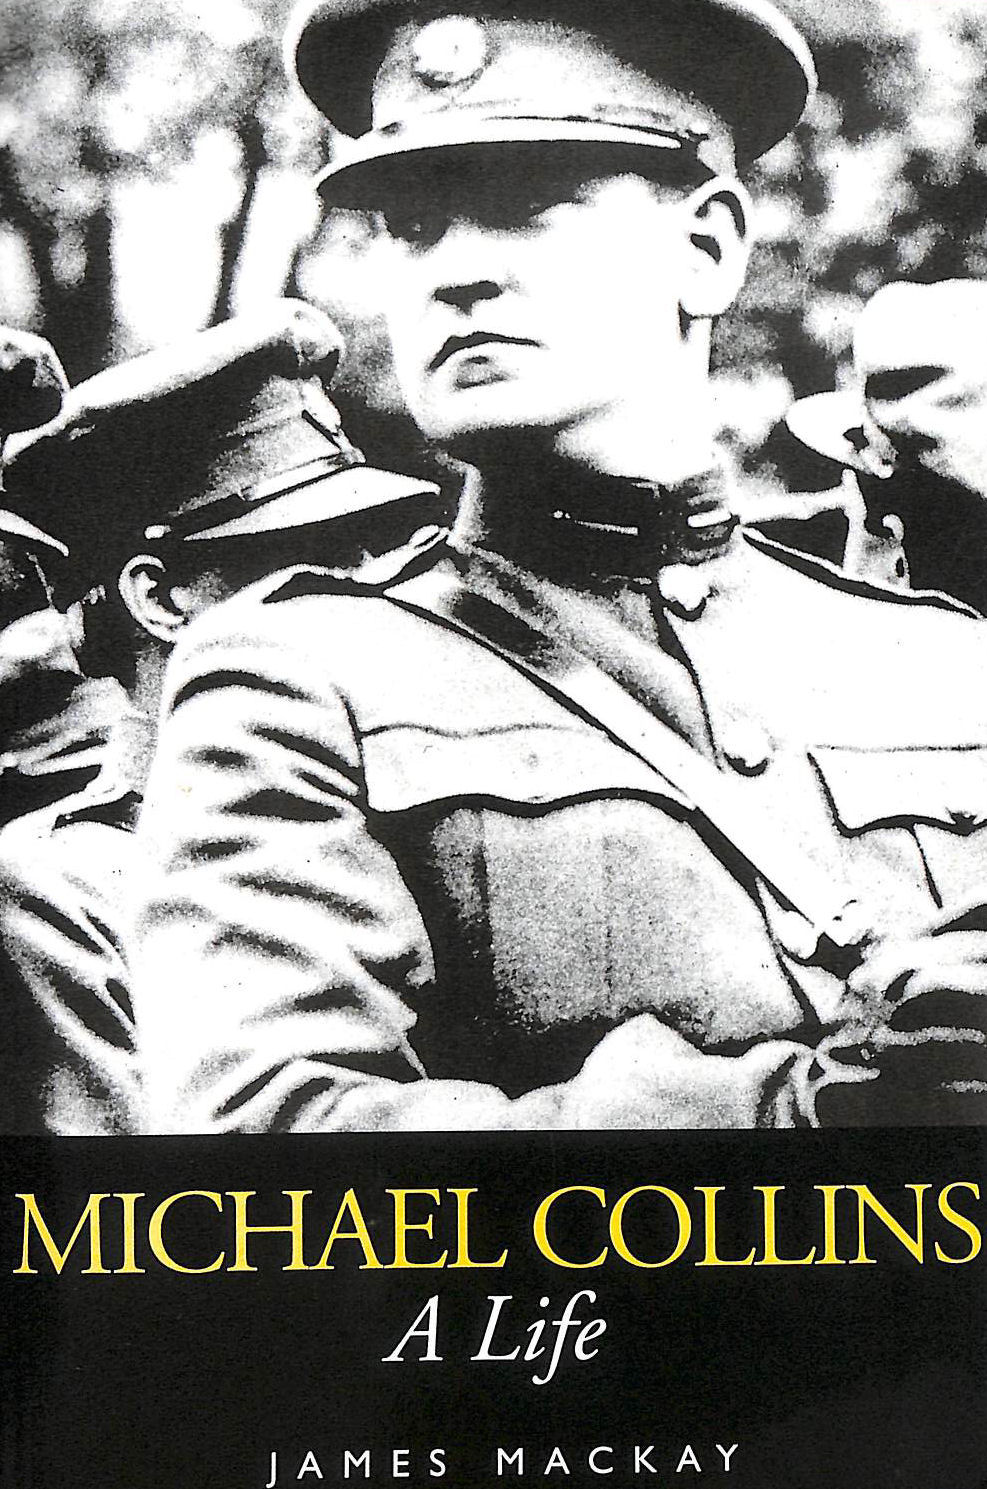 MACKAY, JAMES A. - Michael Collins: A Life